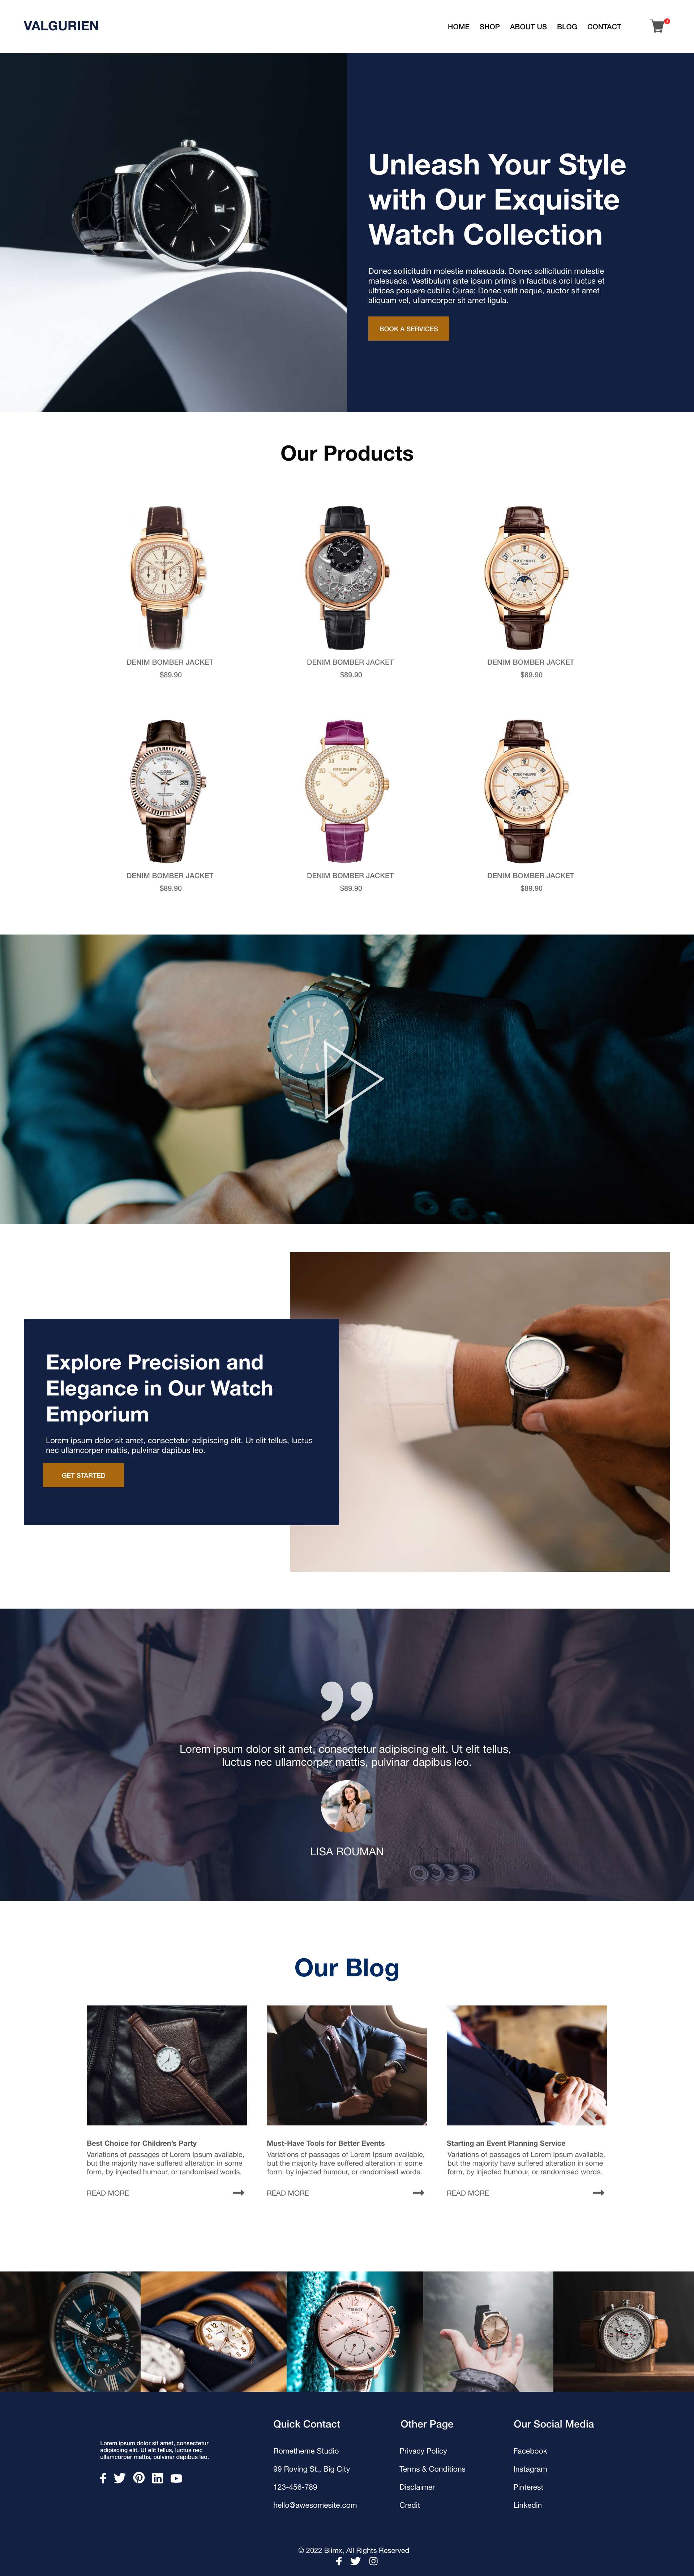 Men's Watches Website Design